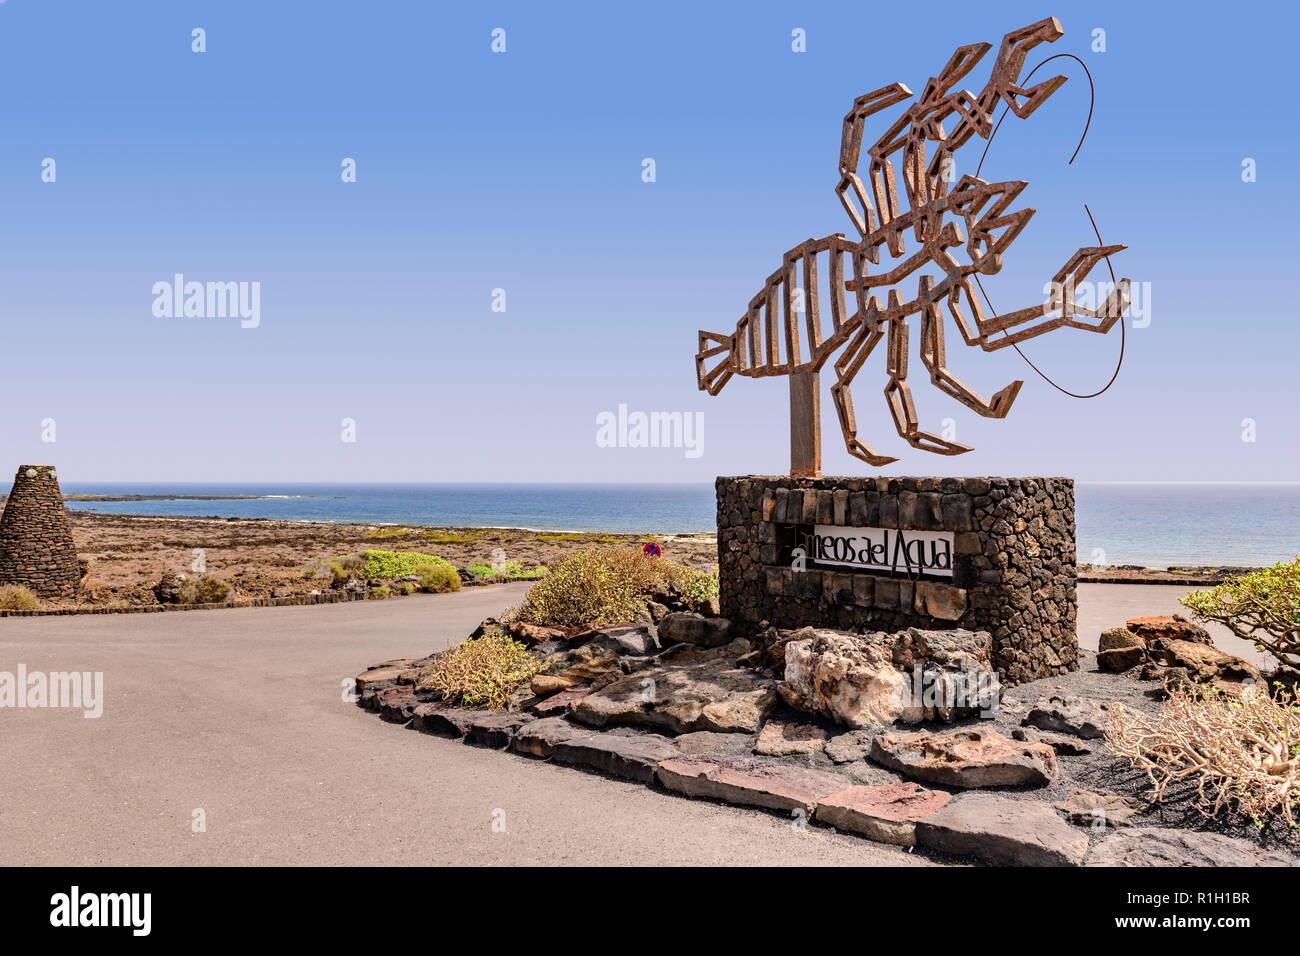 Sculpture de homard à l'entrée de Jameos del aqua, Lanzarote, îles canaries Banque D'Images